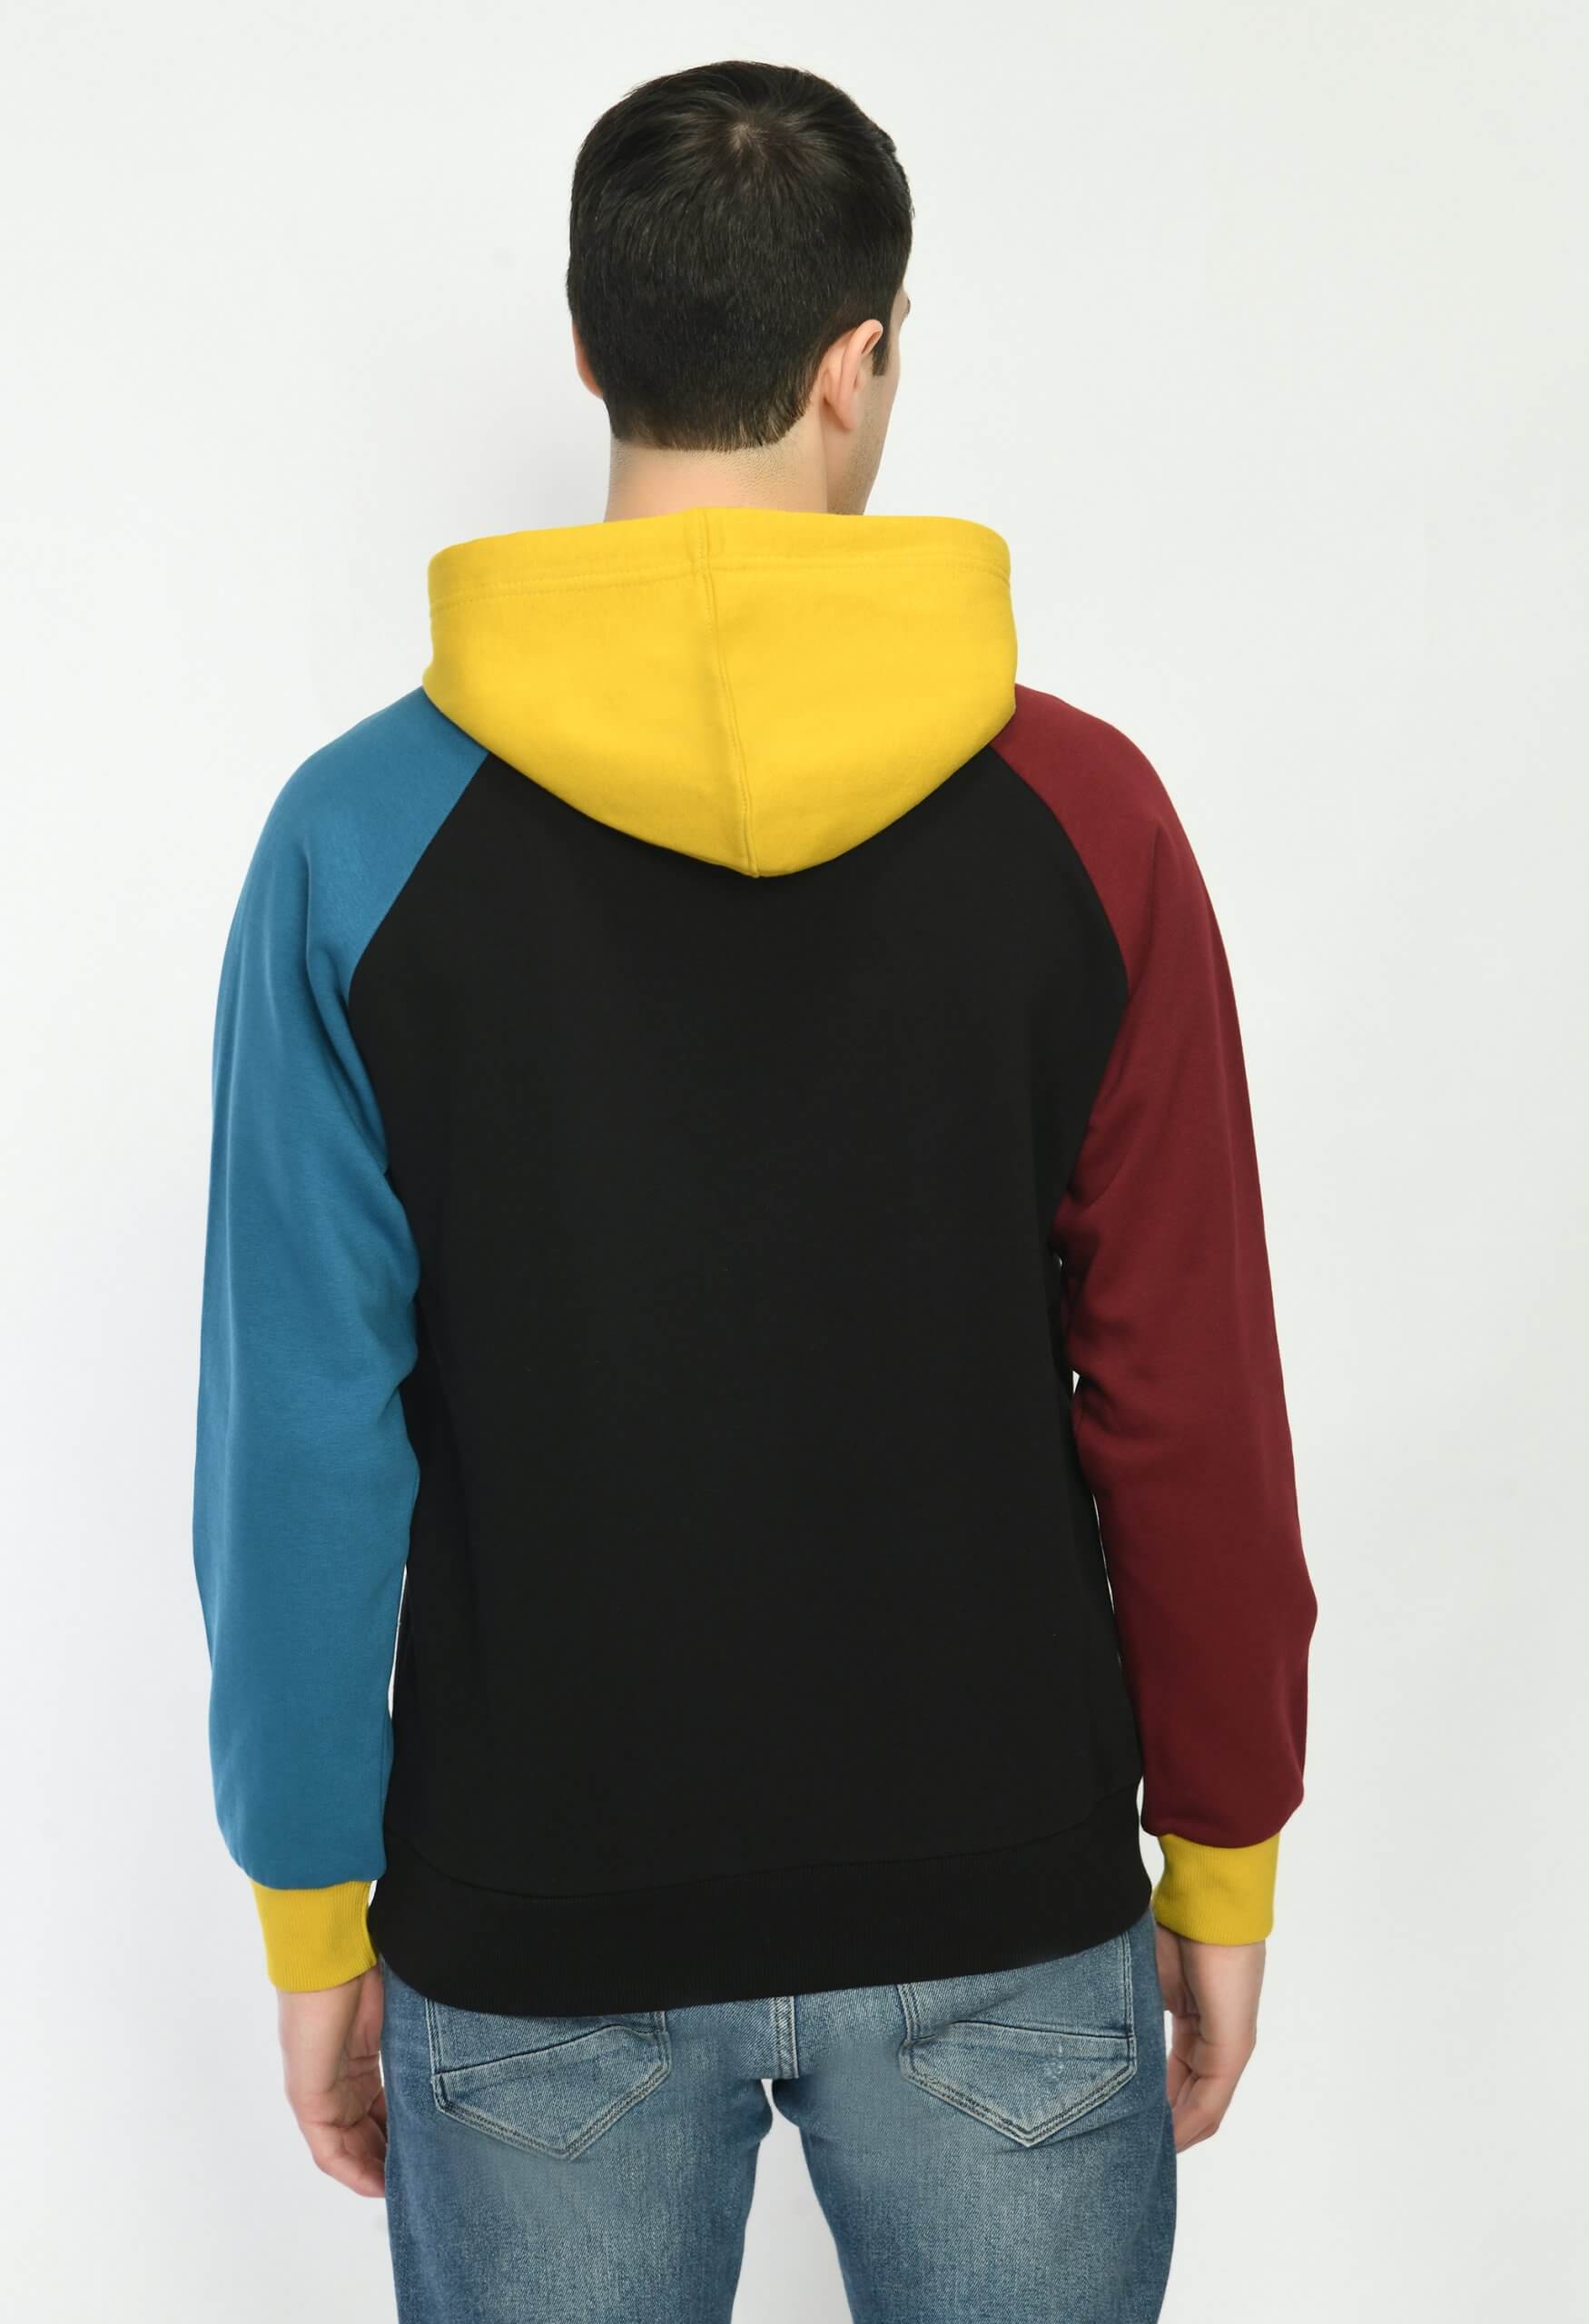 Black Coloured Sweatshirt by Deerdo